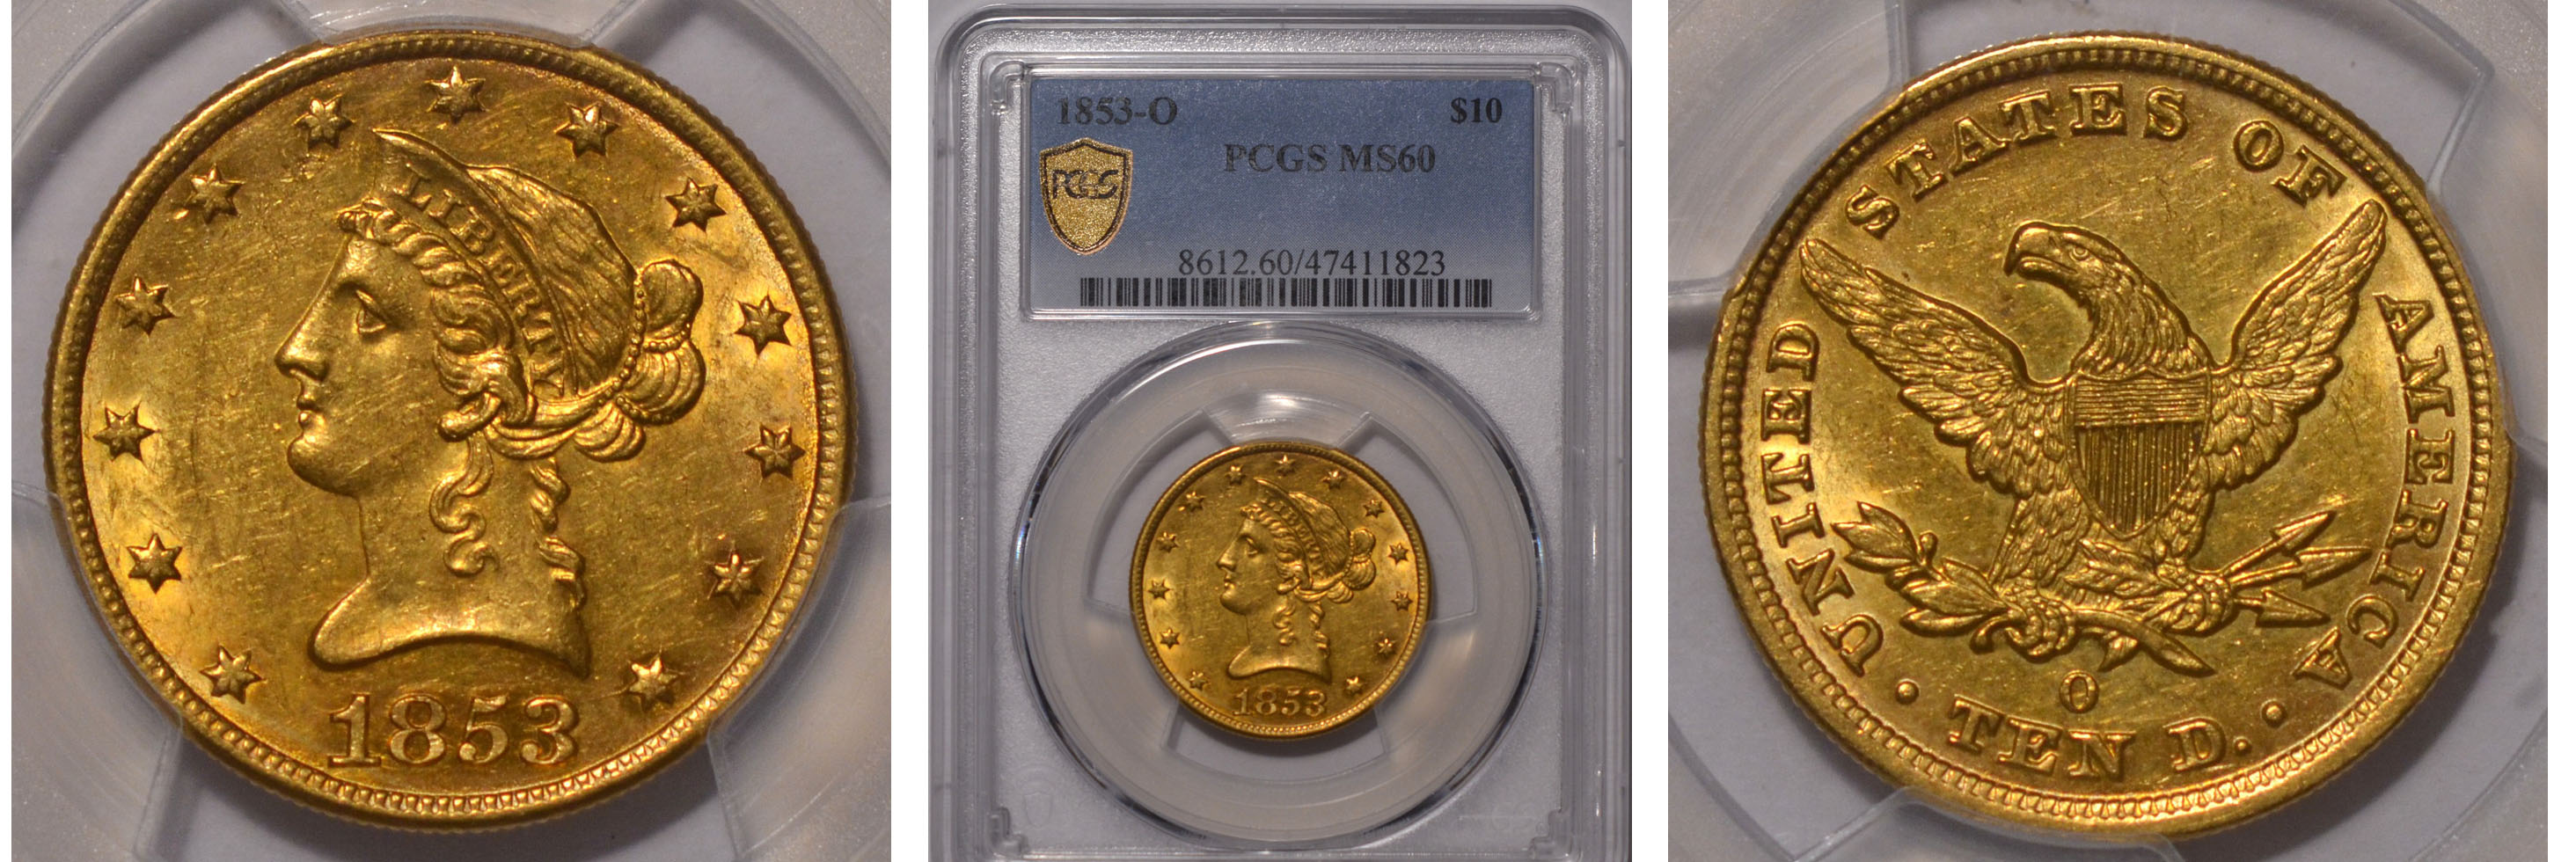 1853-O Gold Eagle $10 PCGS MS60